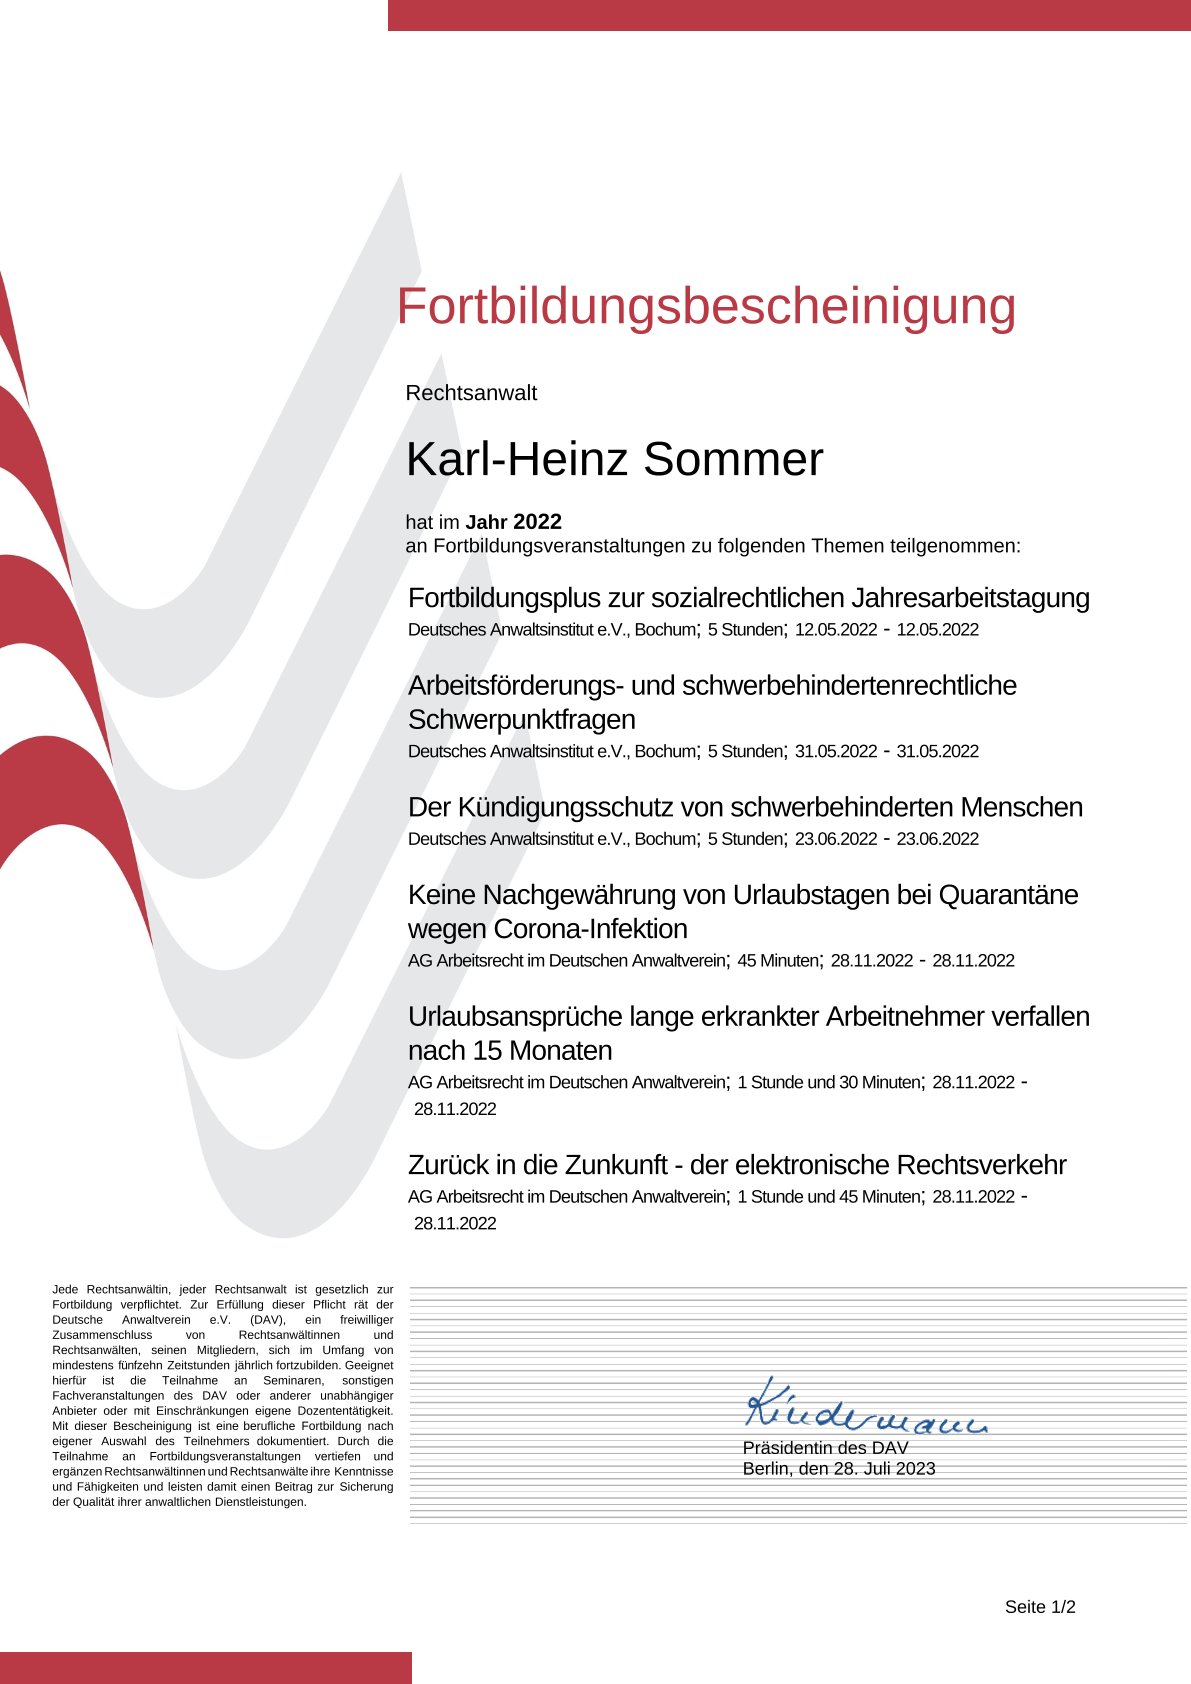 2022Fortbildungsbescheinigung_Karl-Heinz Sommer DAV